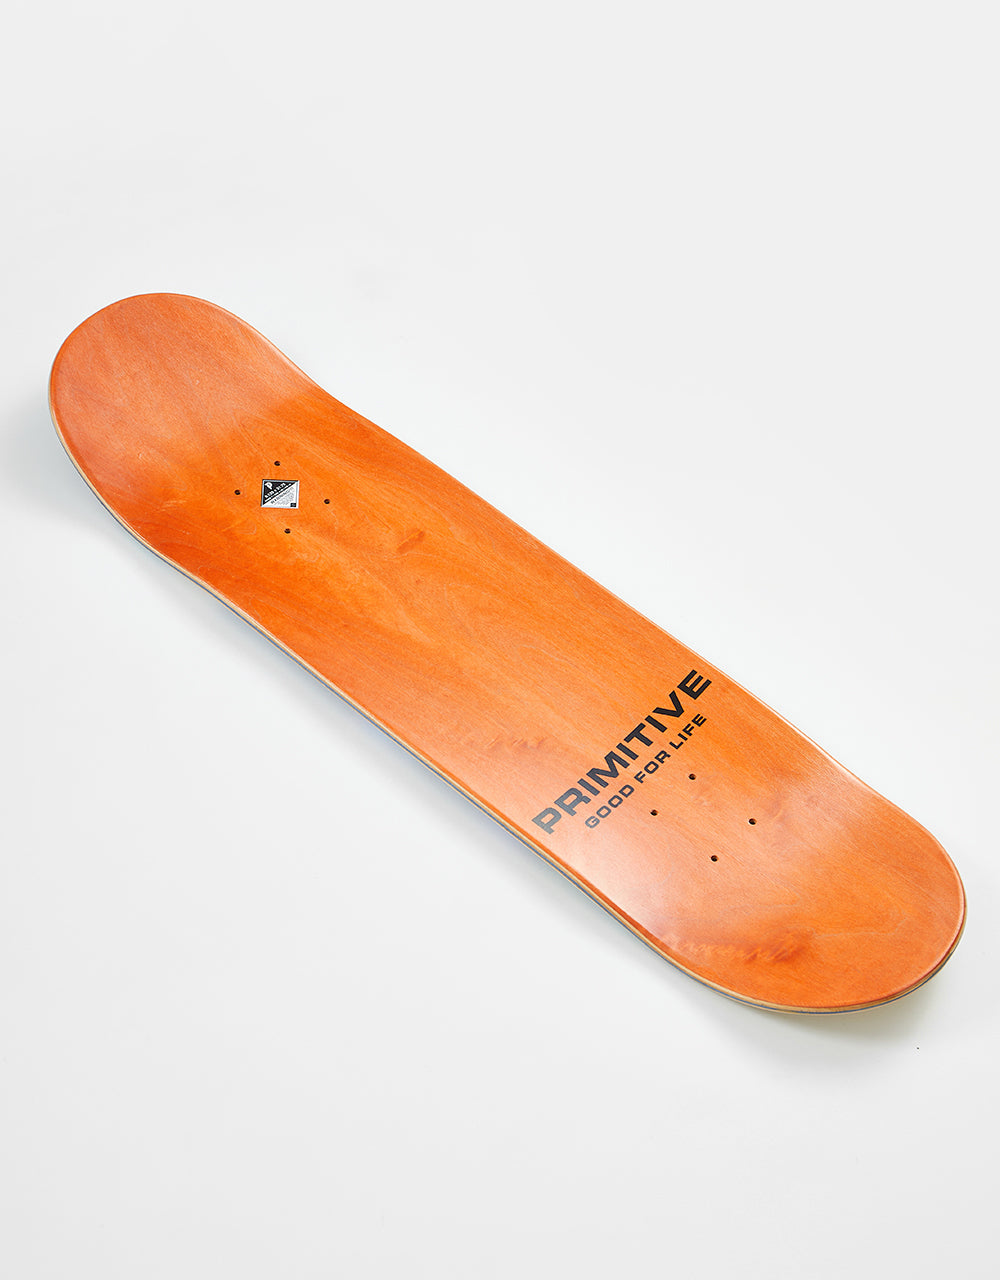 Primitive Gillet Portal Skateboard Deck - 8.125"